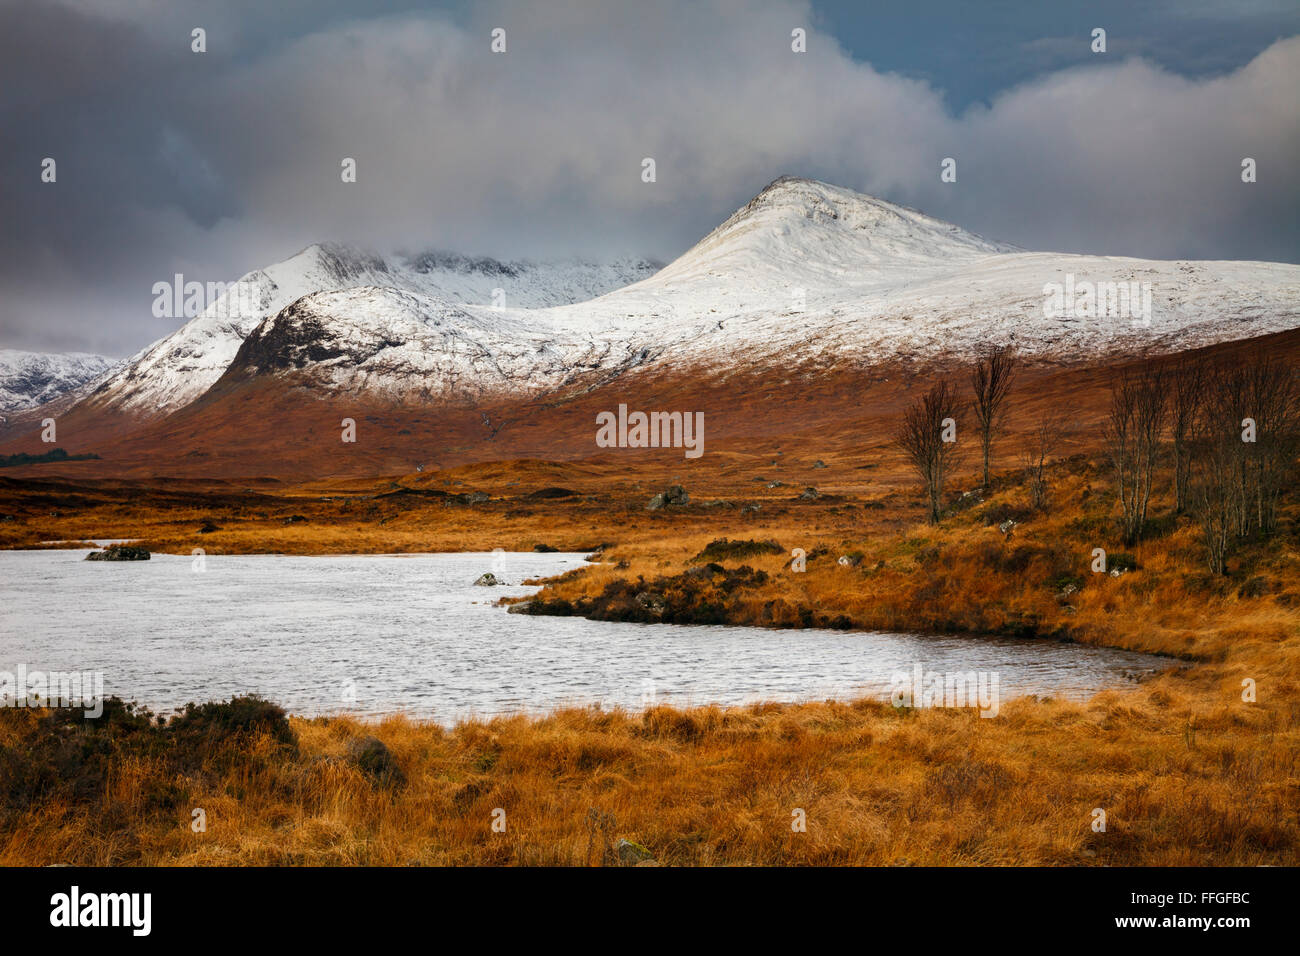 La nieve sobre el Monte Negro, en el extremo sur de Rannoch Moor en las Highlands escocesas. Foto de stock